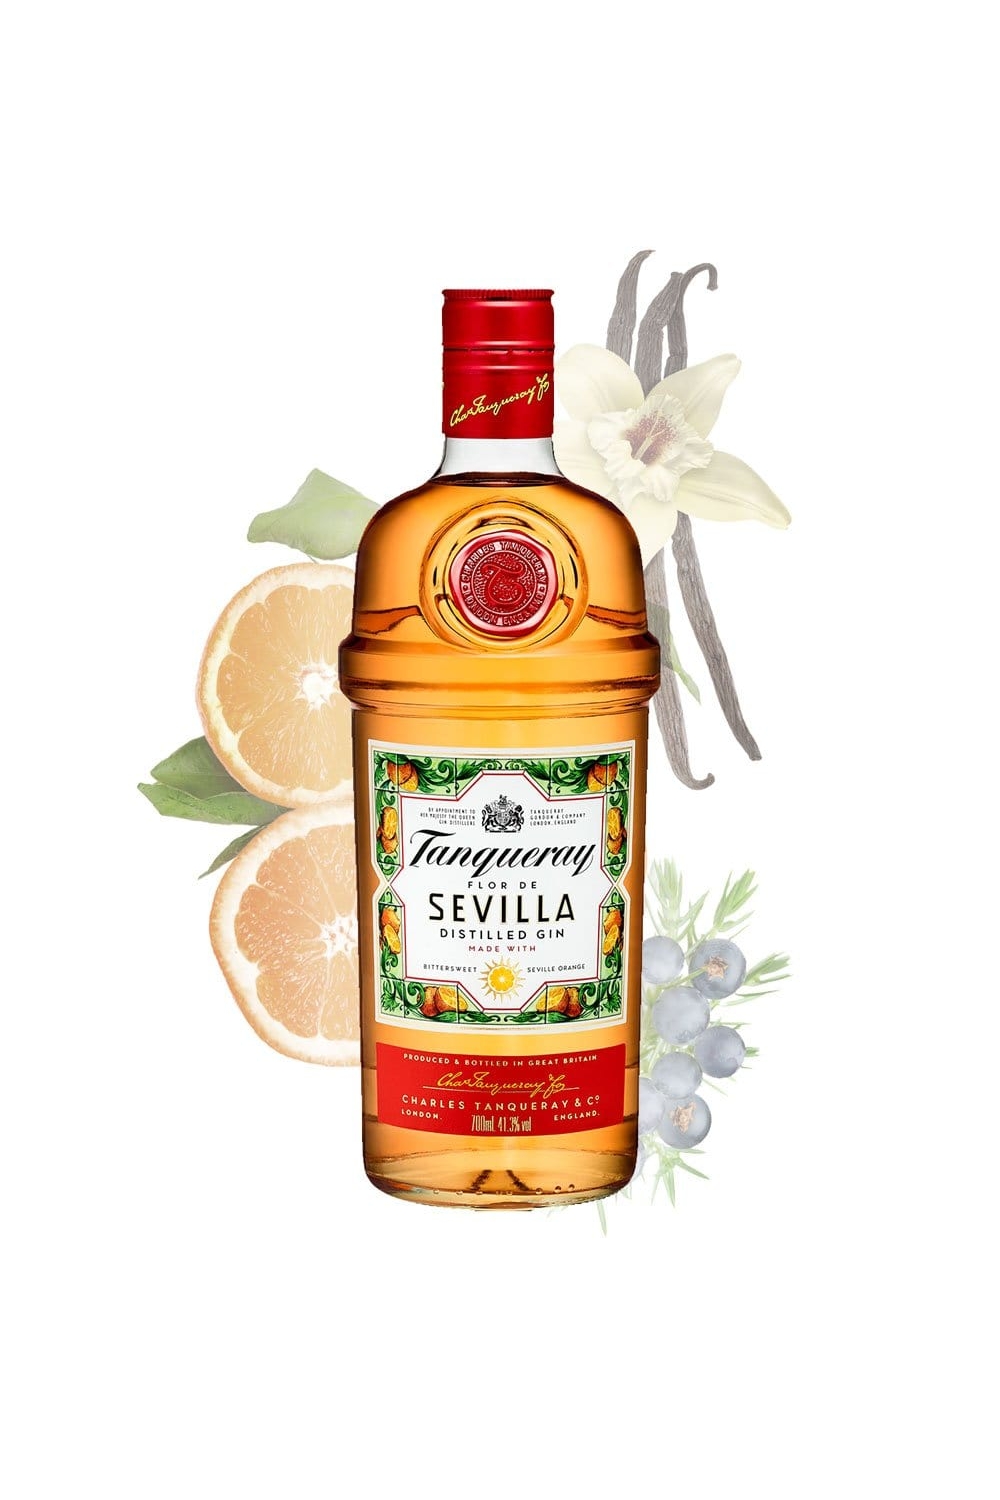 Super beliebter Versandhandel für neue Produkte Tanqueray Flor de Distilled vol. Gin 41,3% Gin Sevilla